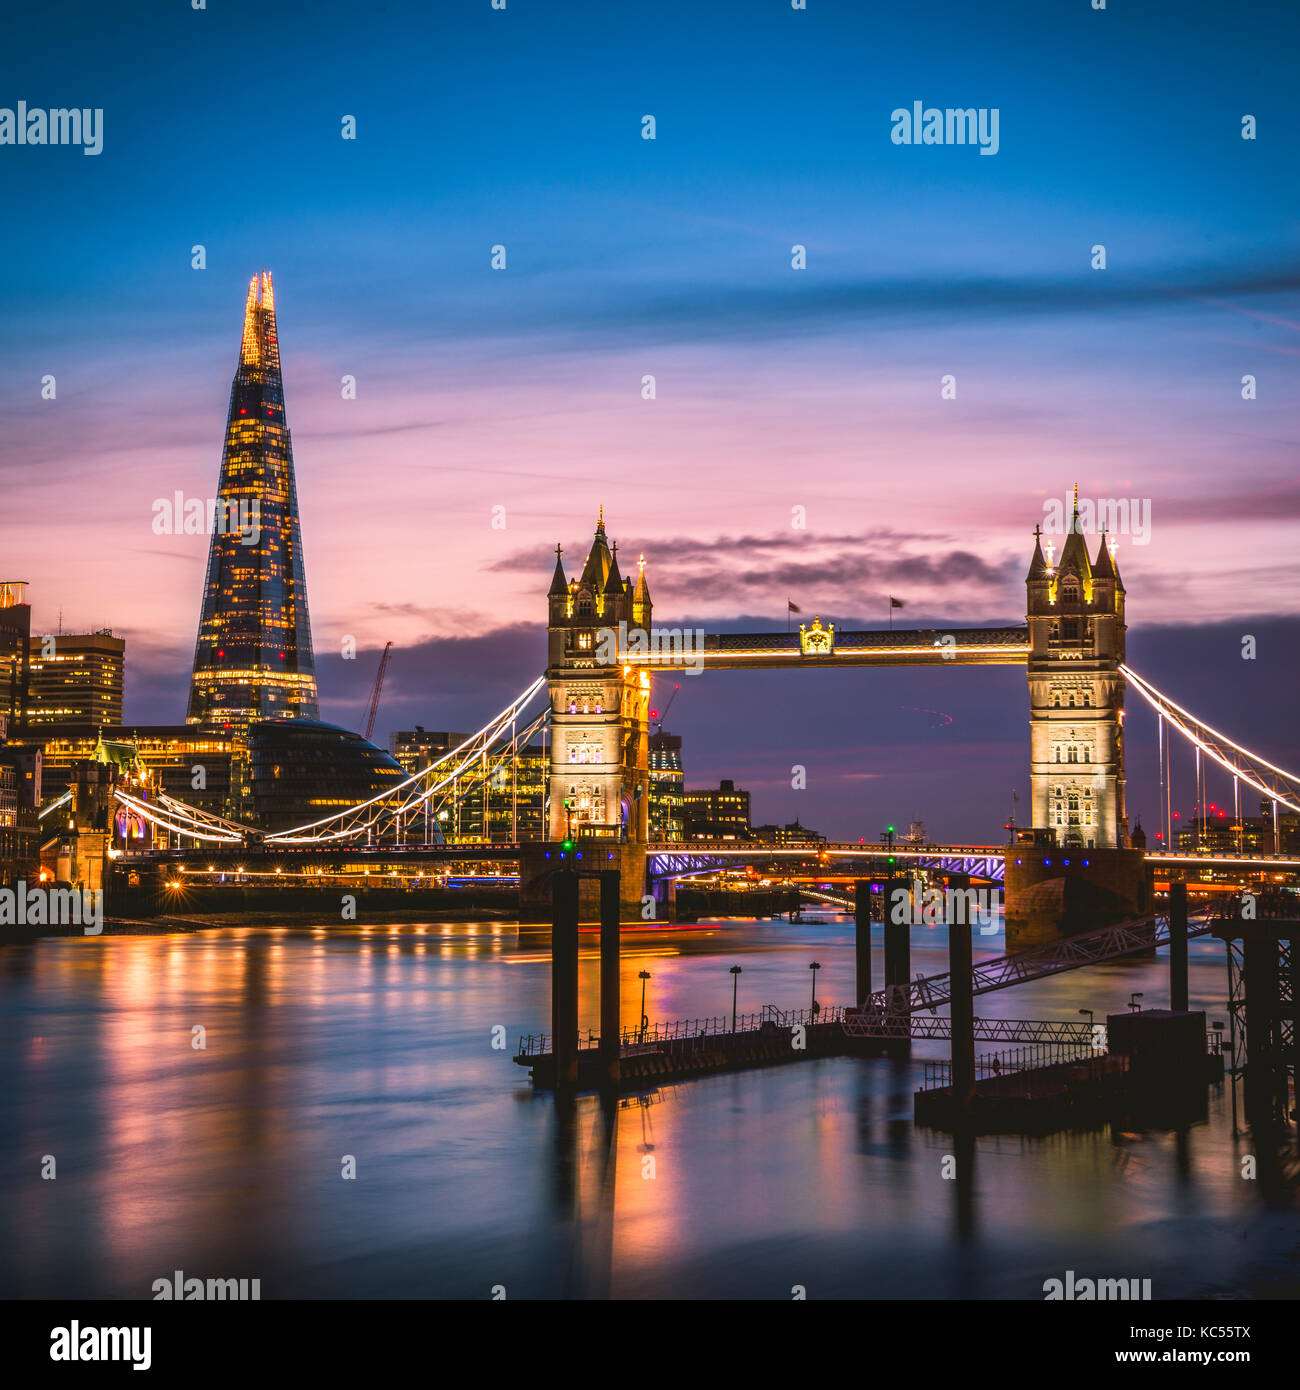 Themse, Tower Bridge, The Shard, coucher de soleil, vue de nuit, illuminé, reflet de l'eau, Southwark, St Katharine's & Wapping, Londres Banque D'Images